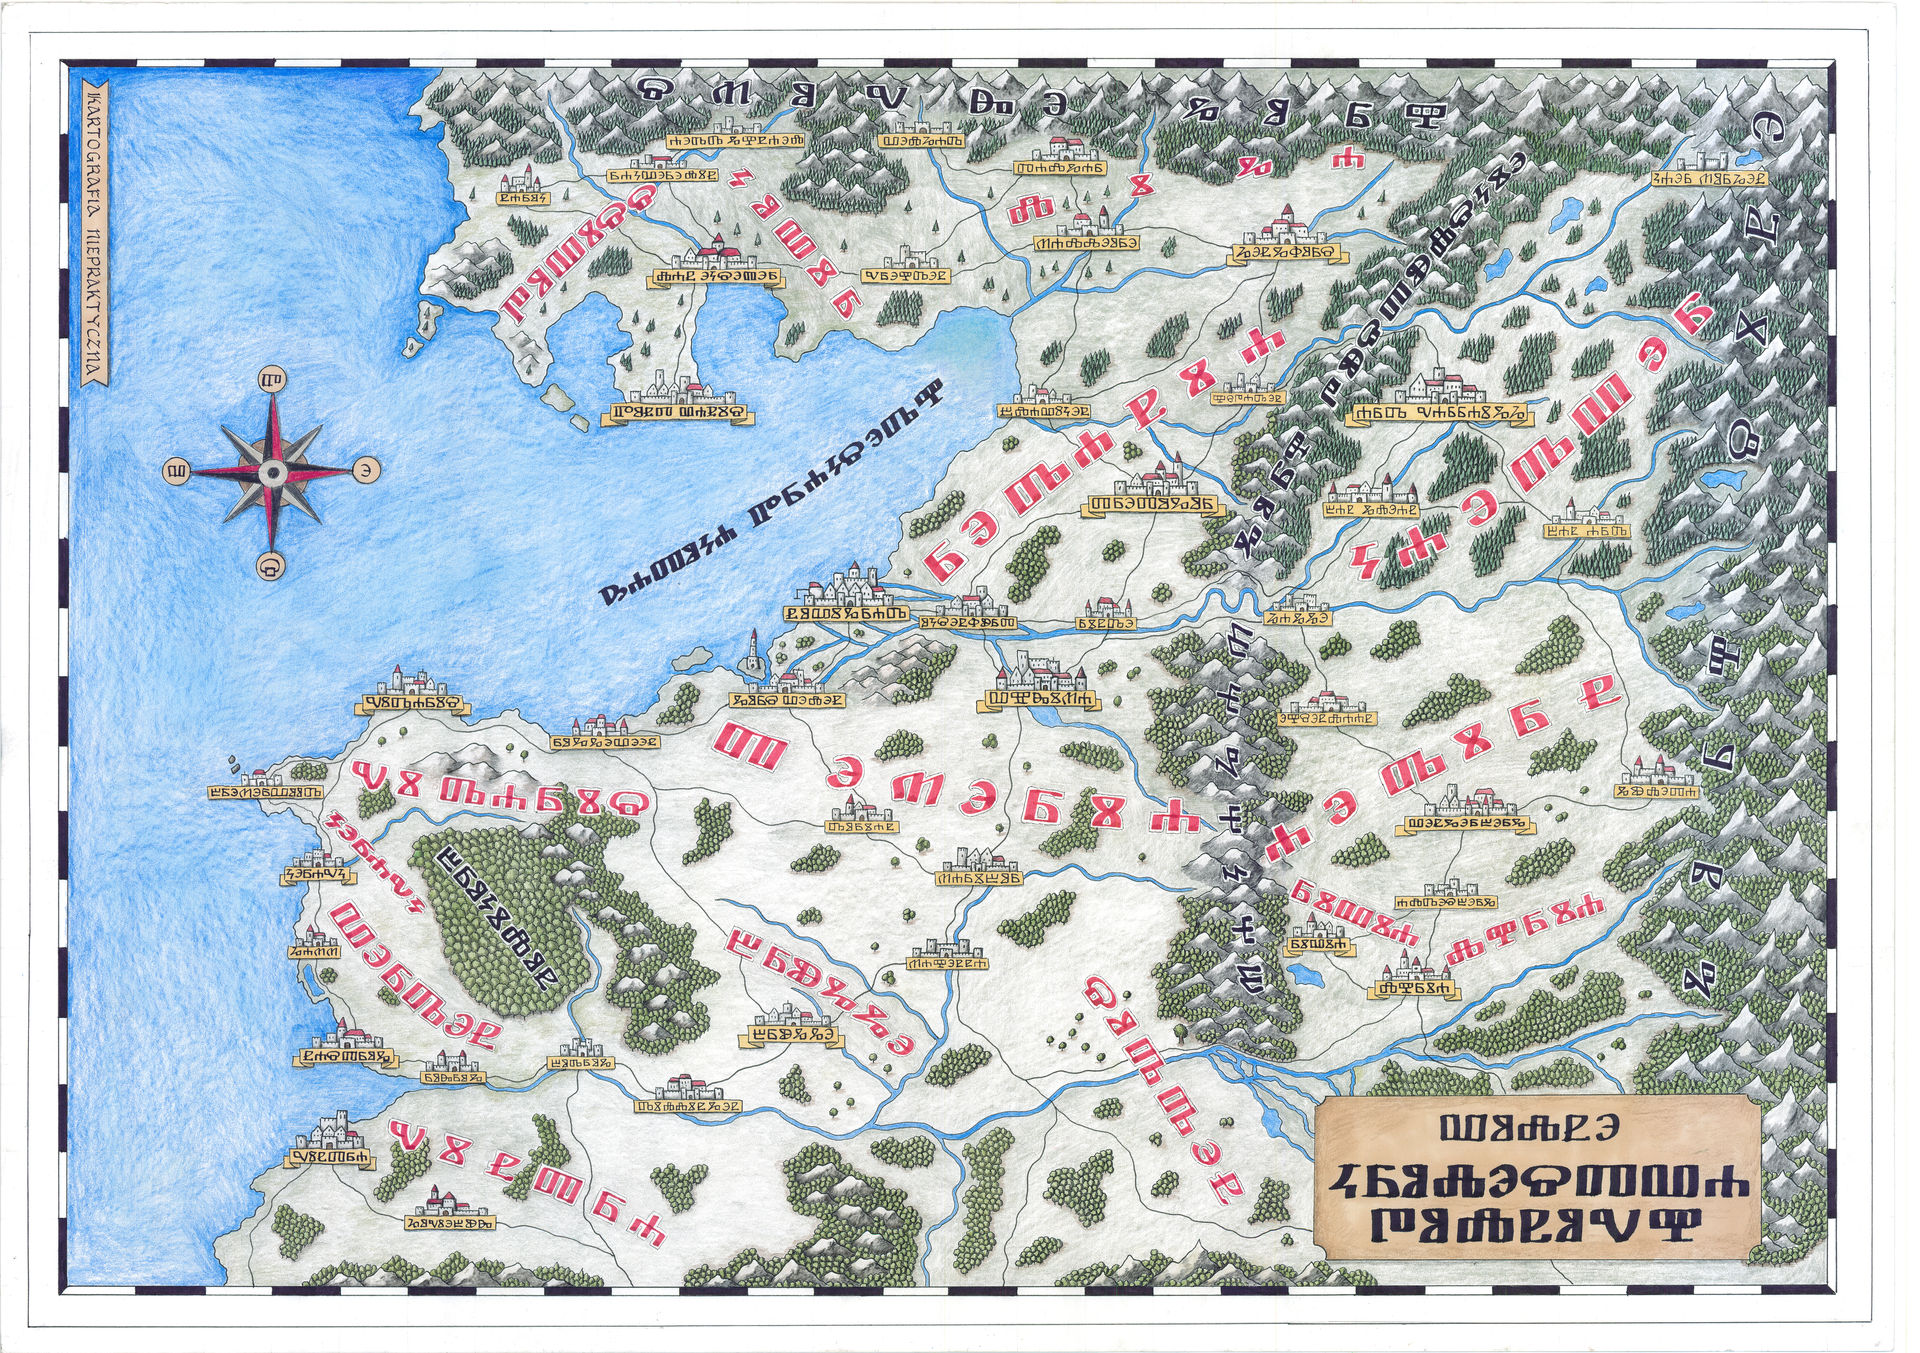 Northen Realms Of Witcher'S World By Mapyniepraktyczne On Deviantart